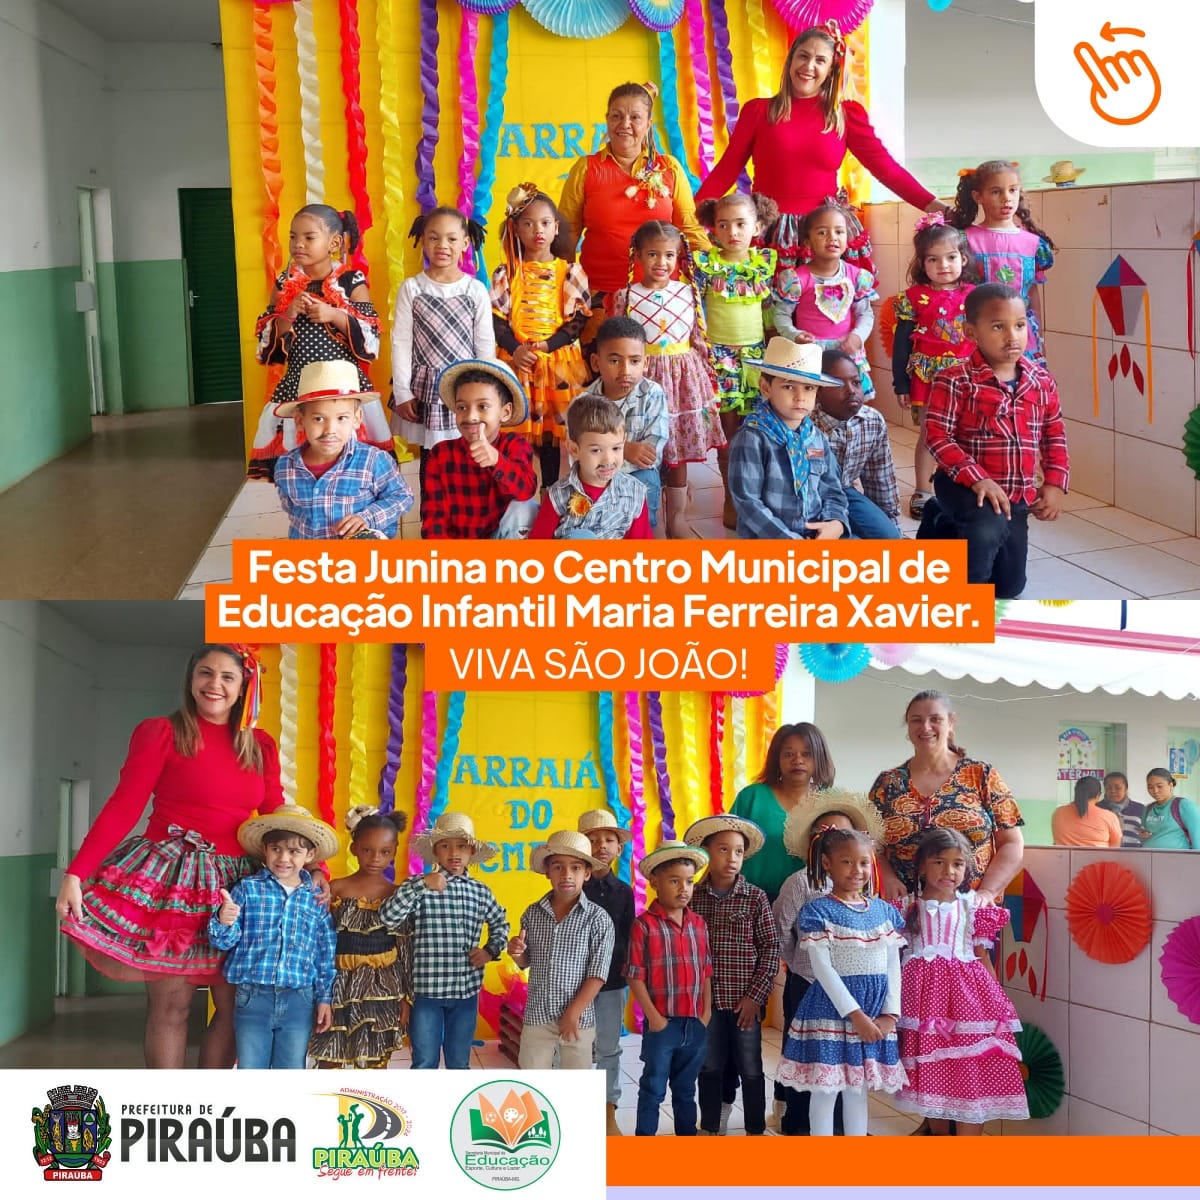 ARRAIÁ DO CENTRO MUNICIPAL DE EDUCAÇÃO INFANTIL MARIA FERREIRA XAVIER